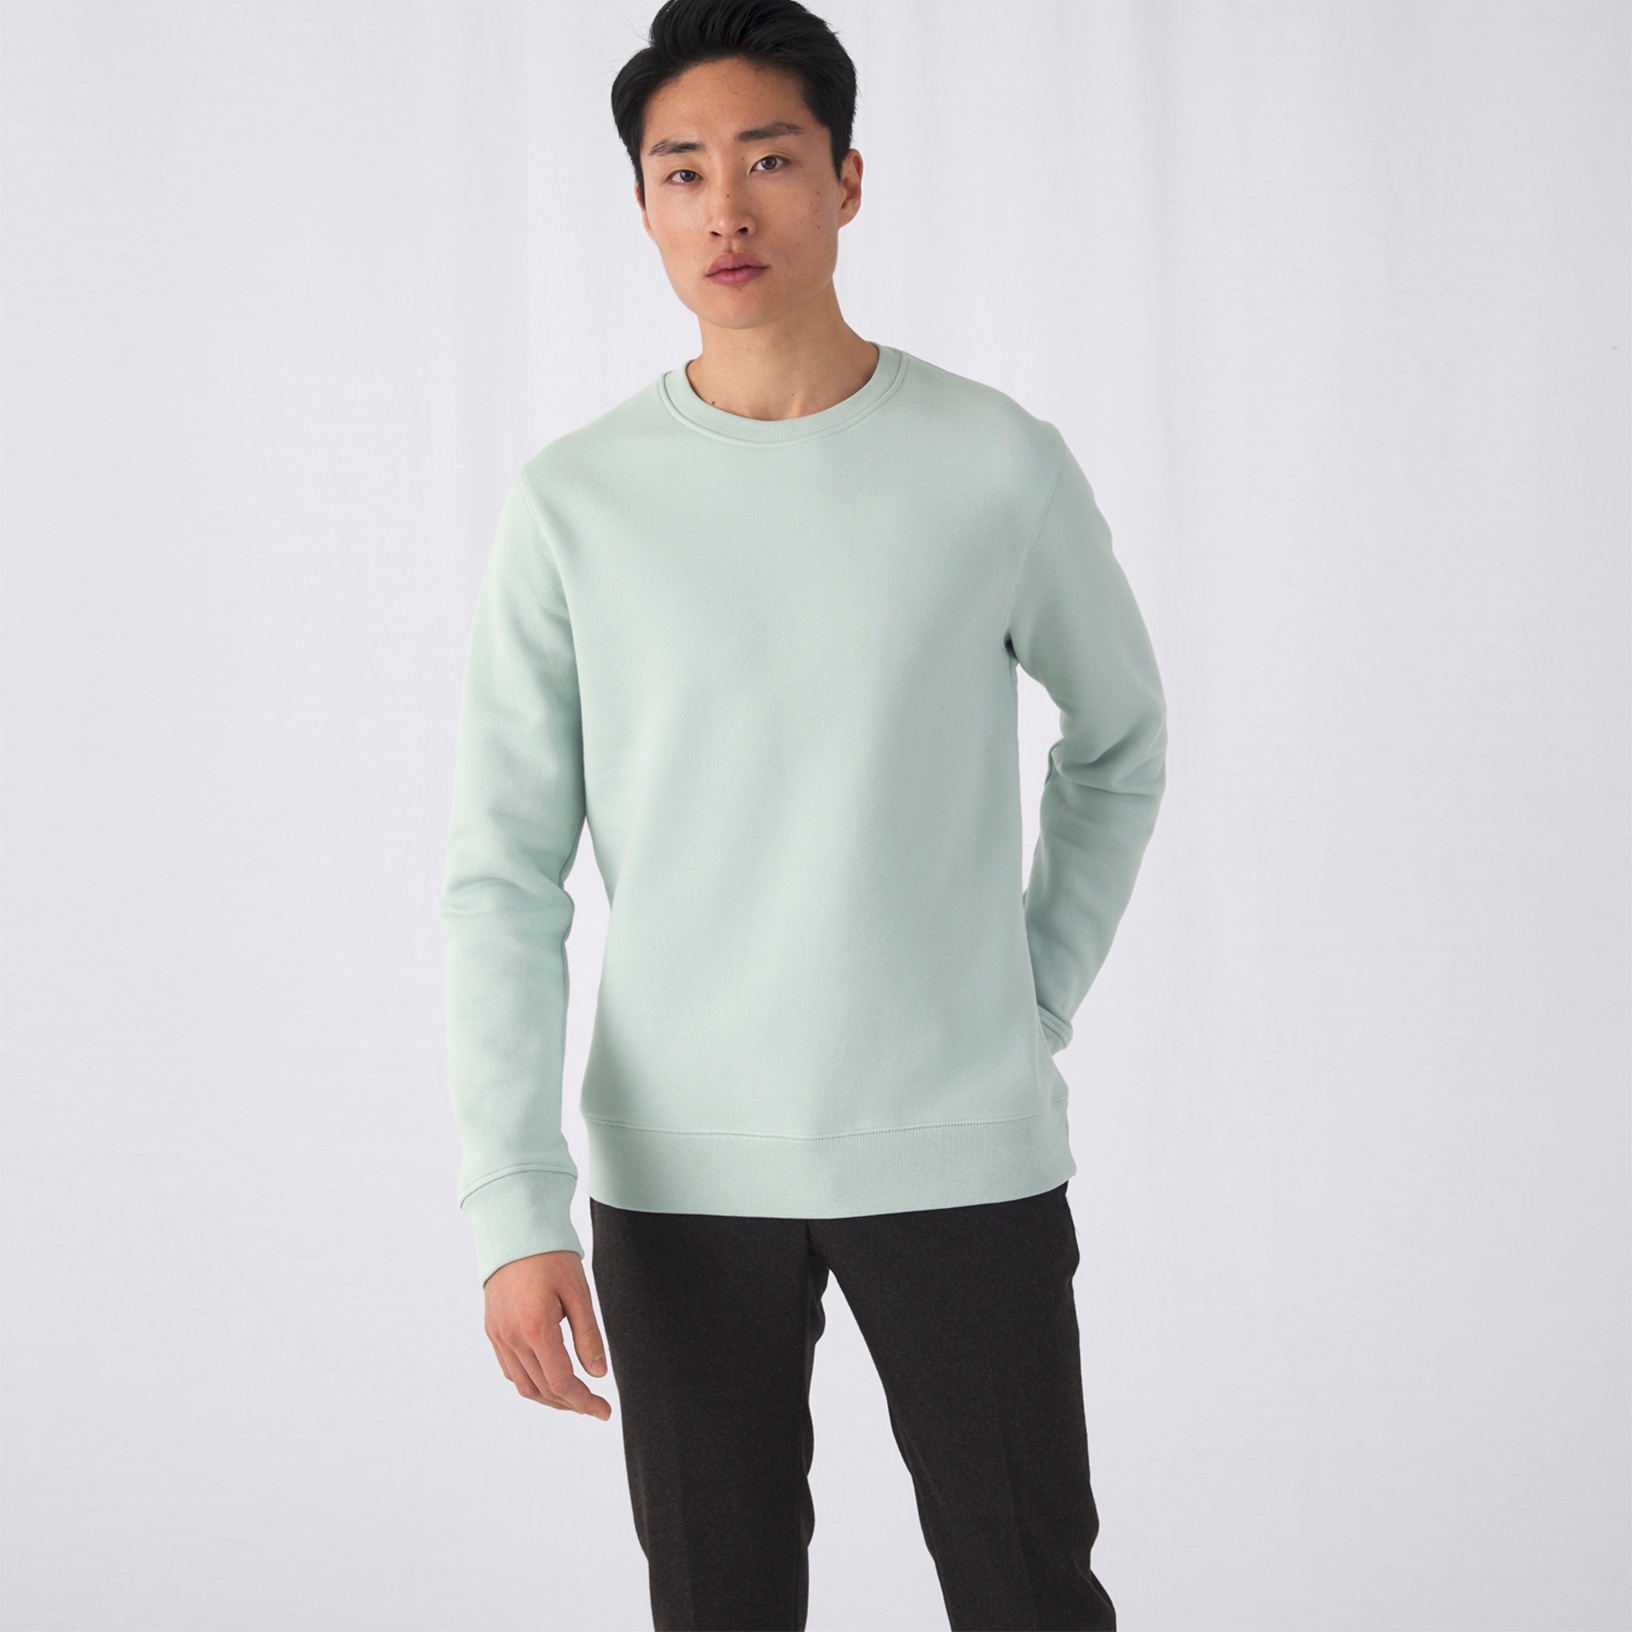 BESTSELLER: Sweater King in vele kleuren - Unisex